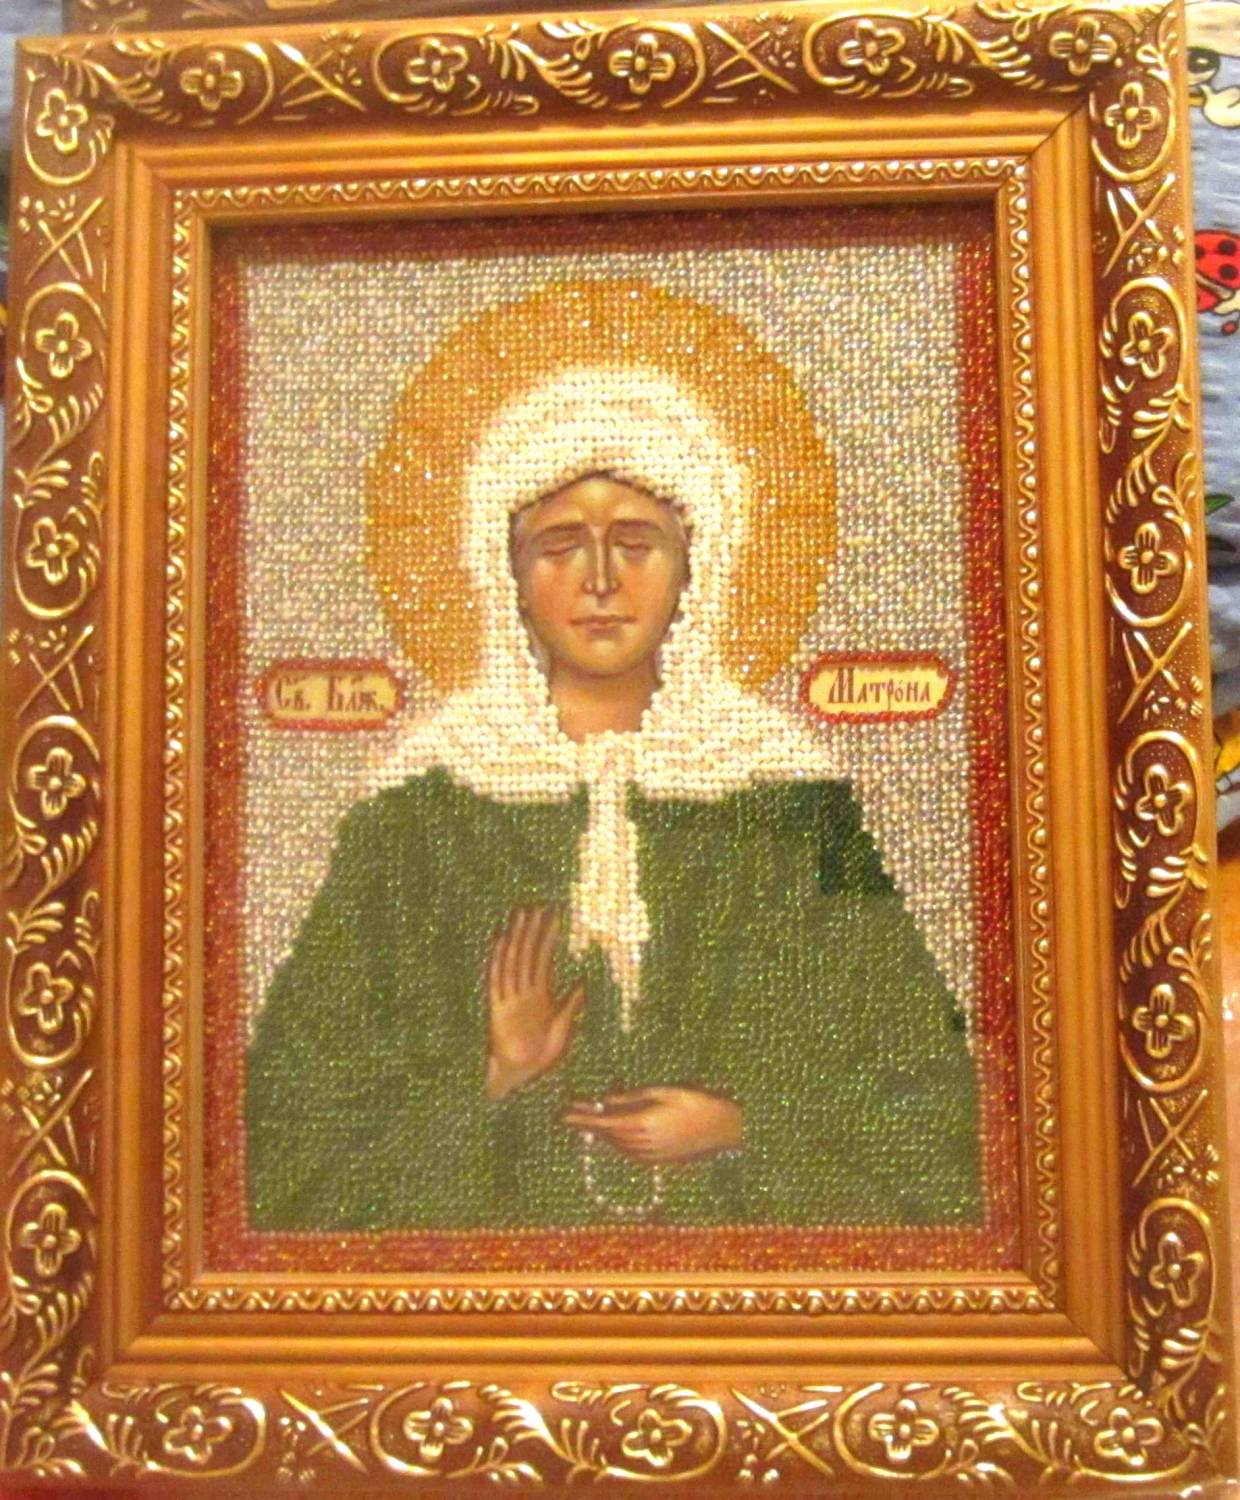 Купить (заказать) икону "Св. Блаженная Матрона Московская"